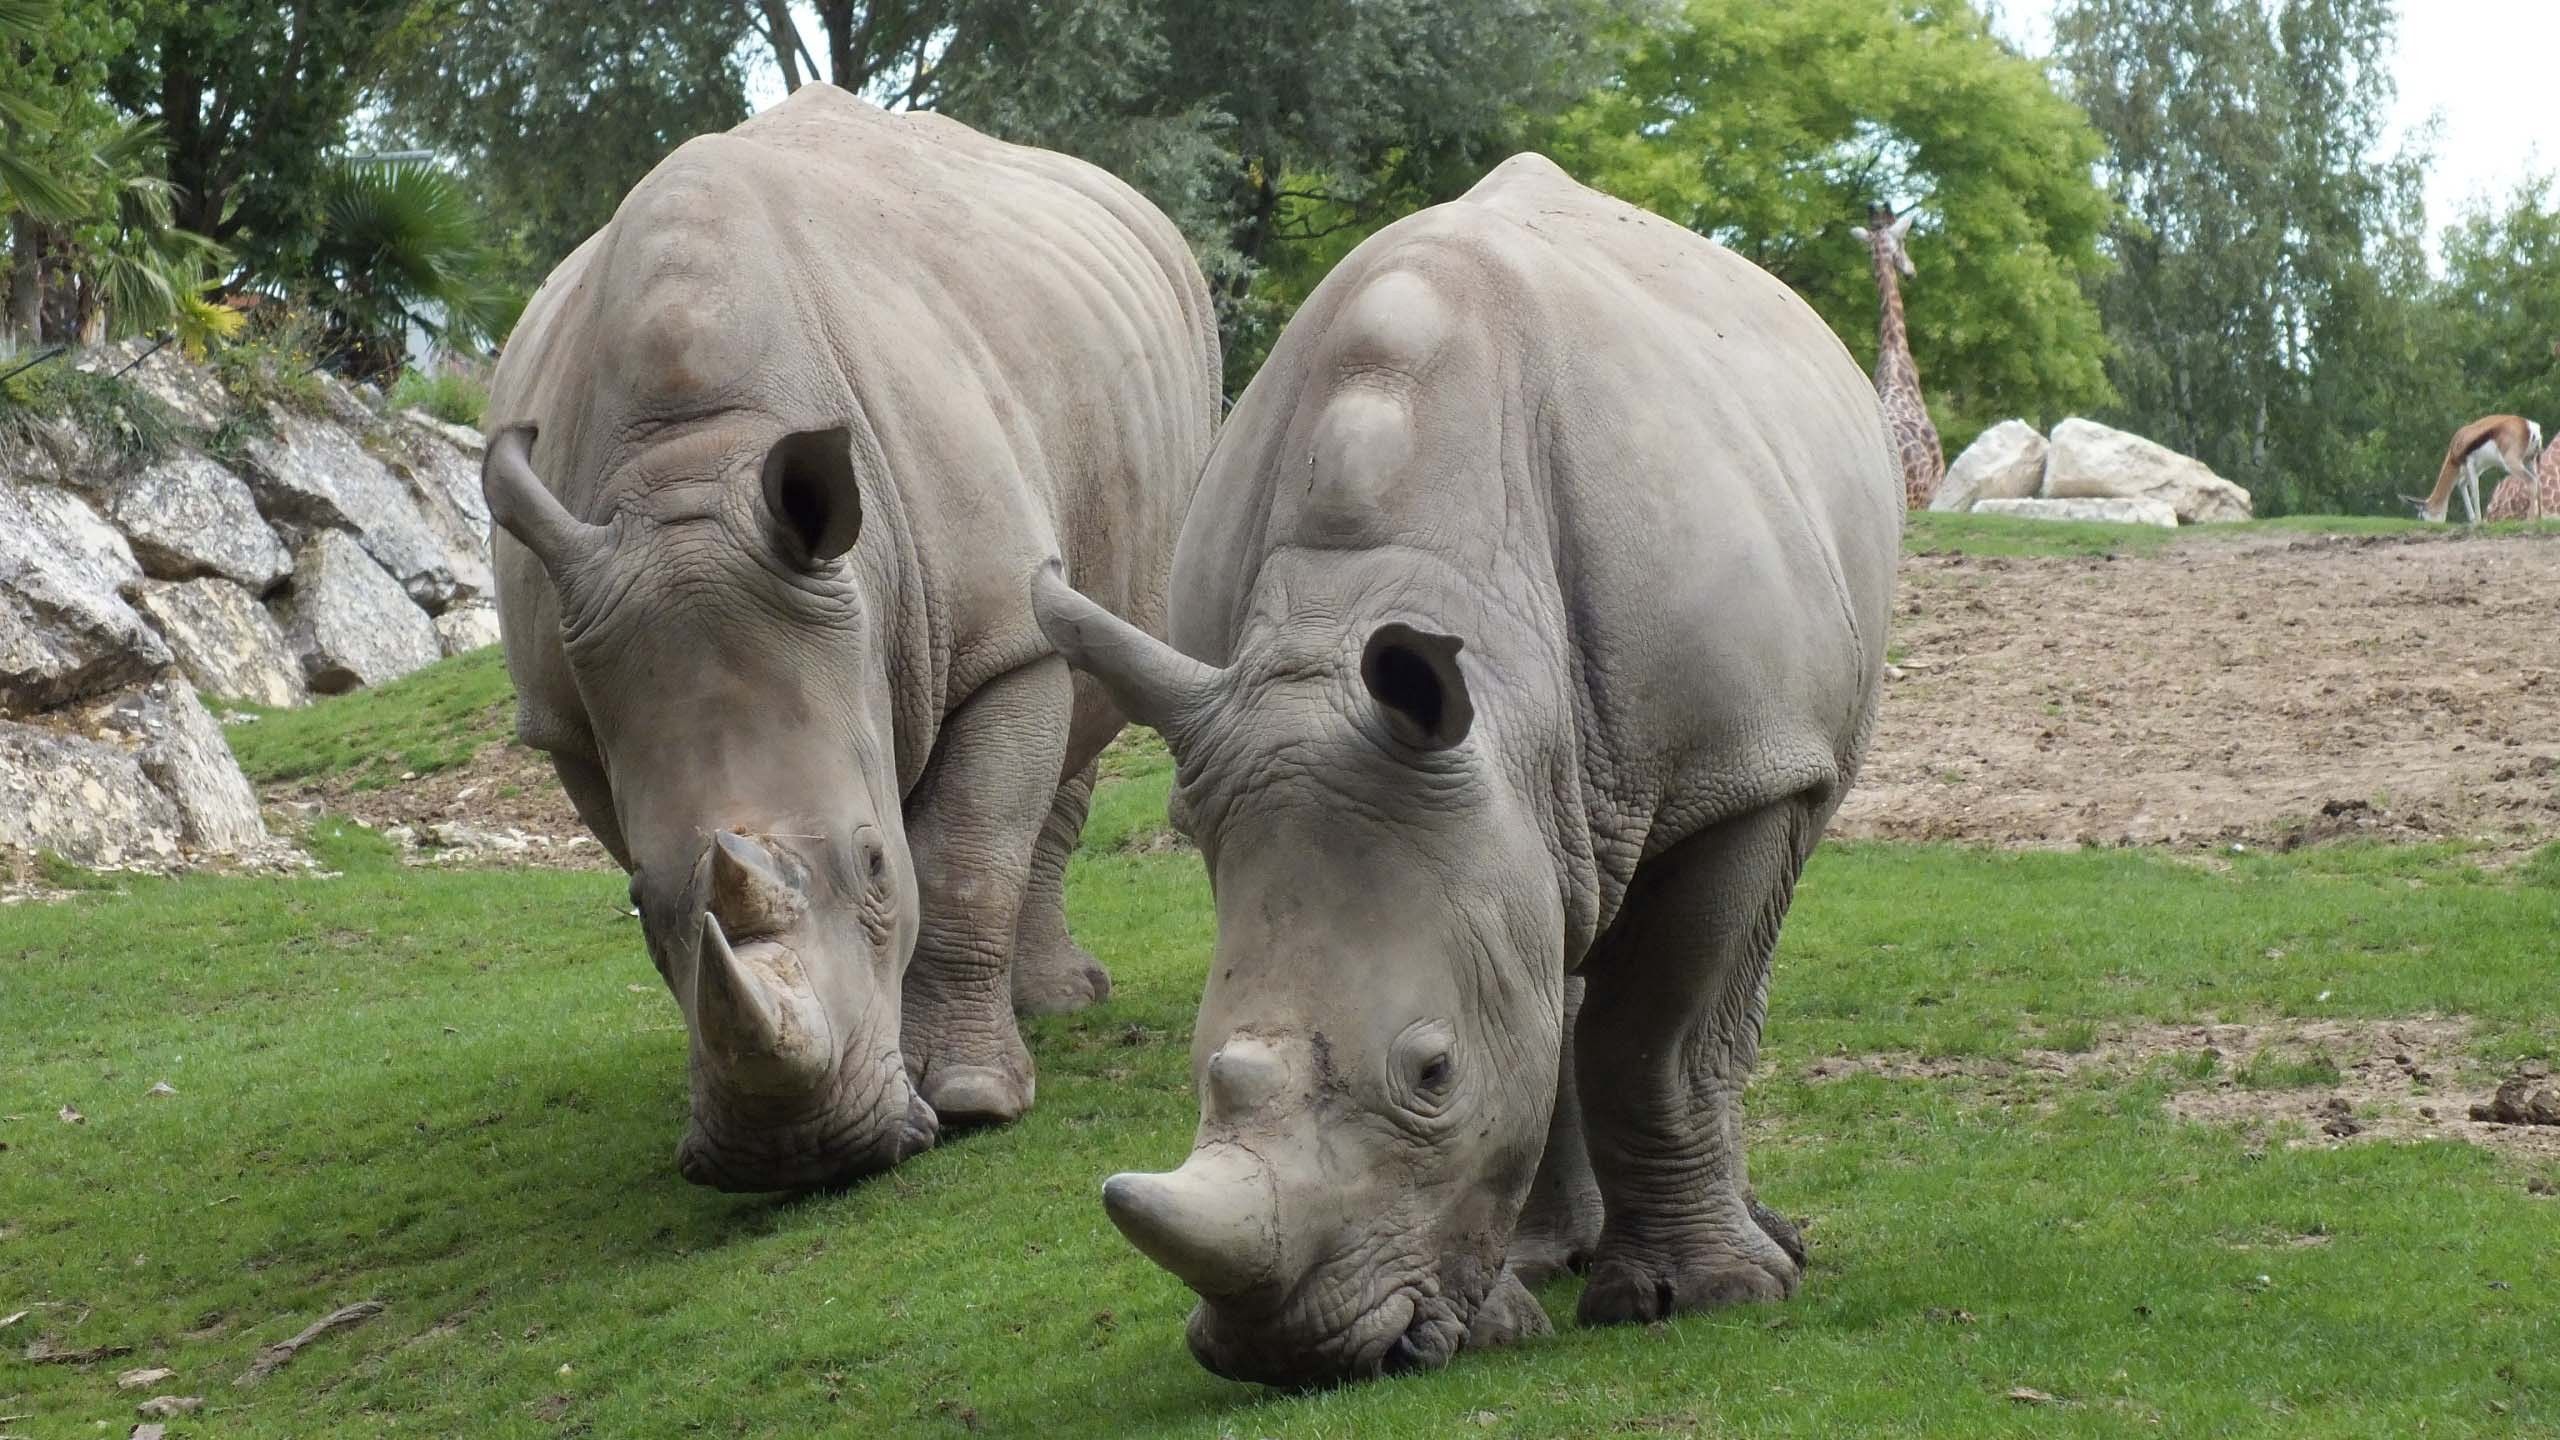 Скачать обои Носороги на телефон бесплатно